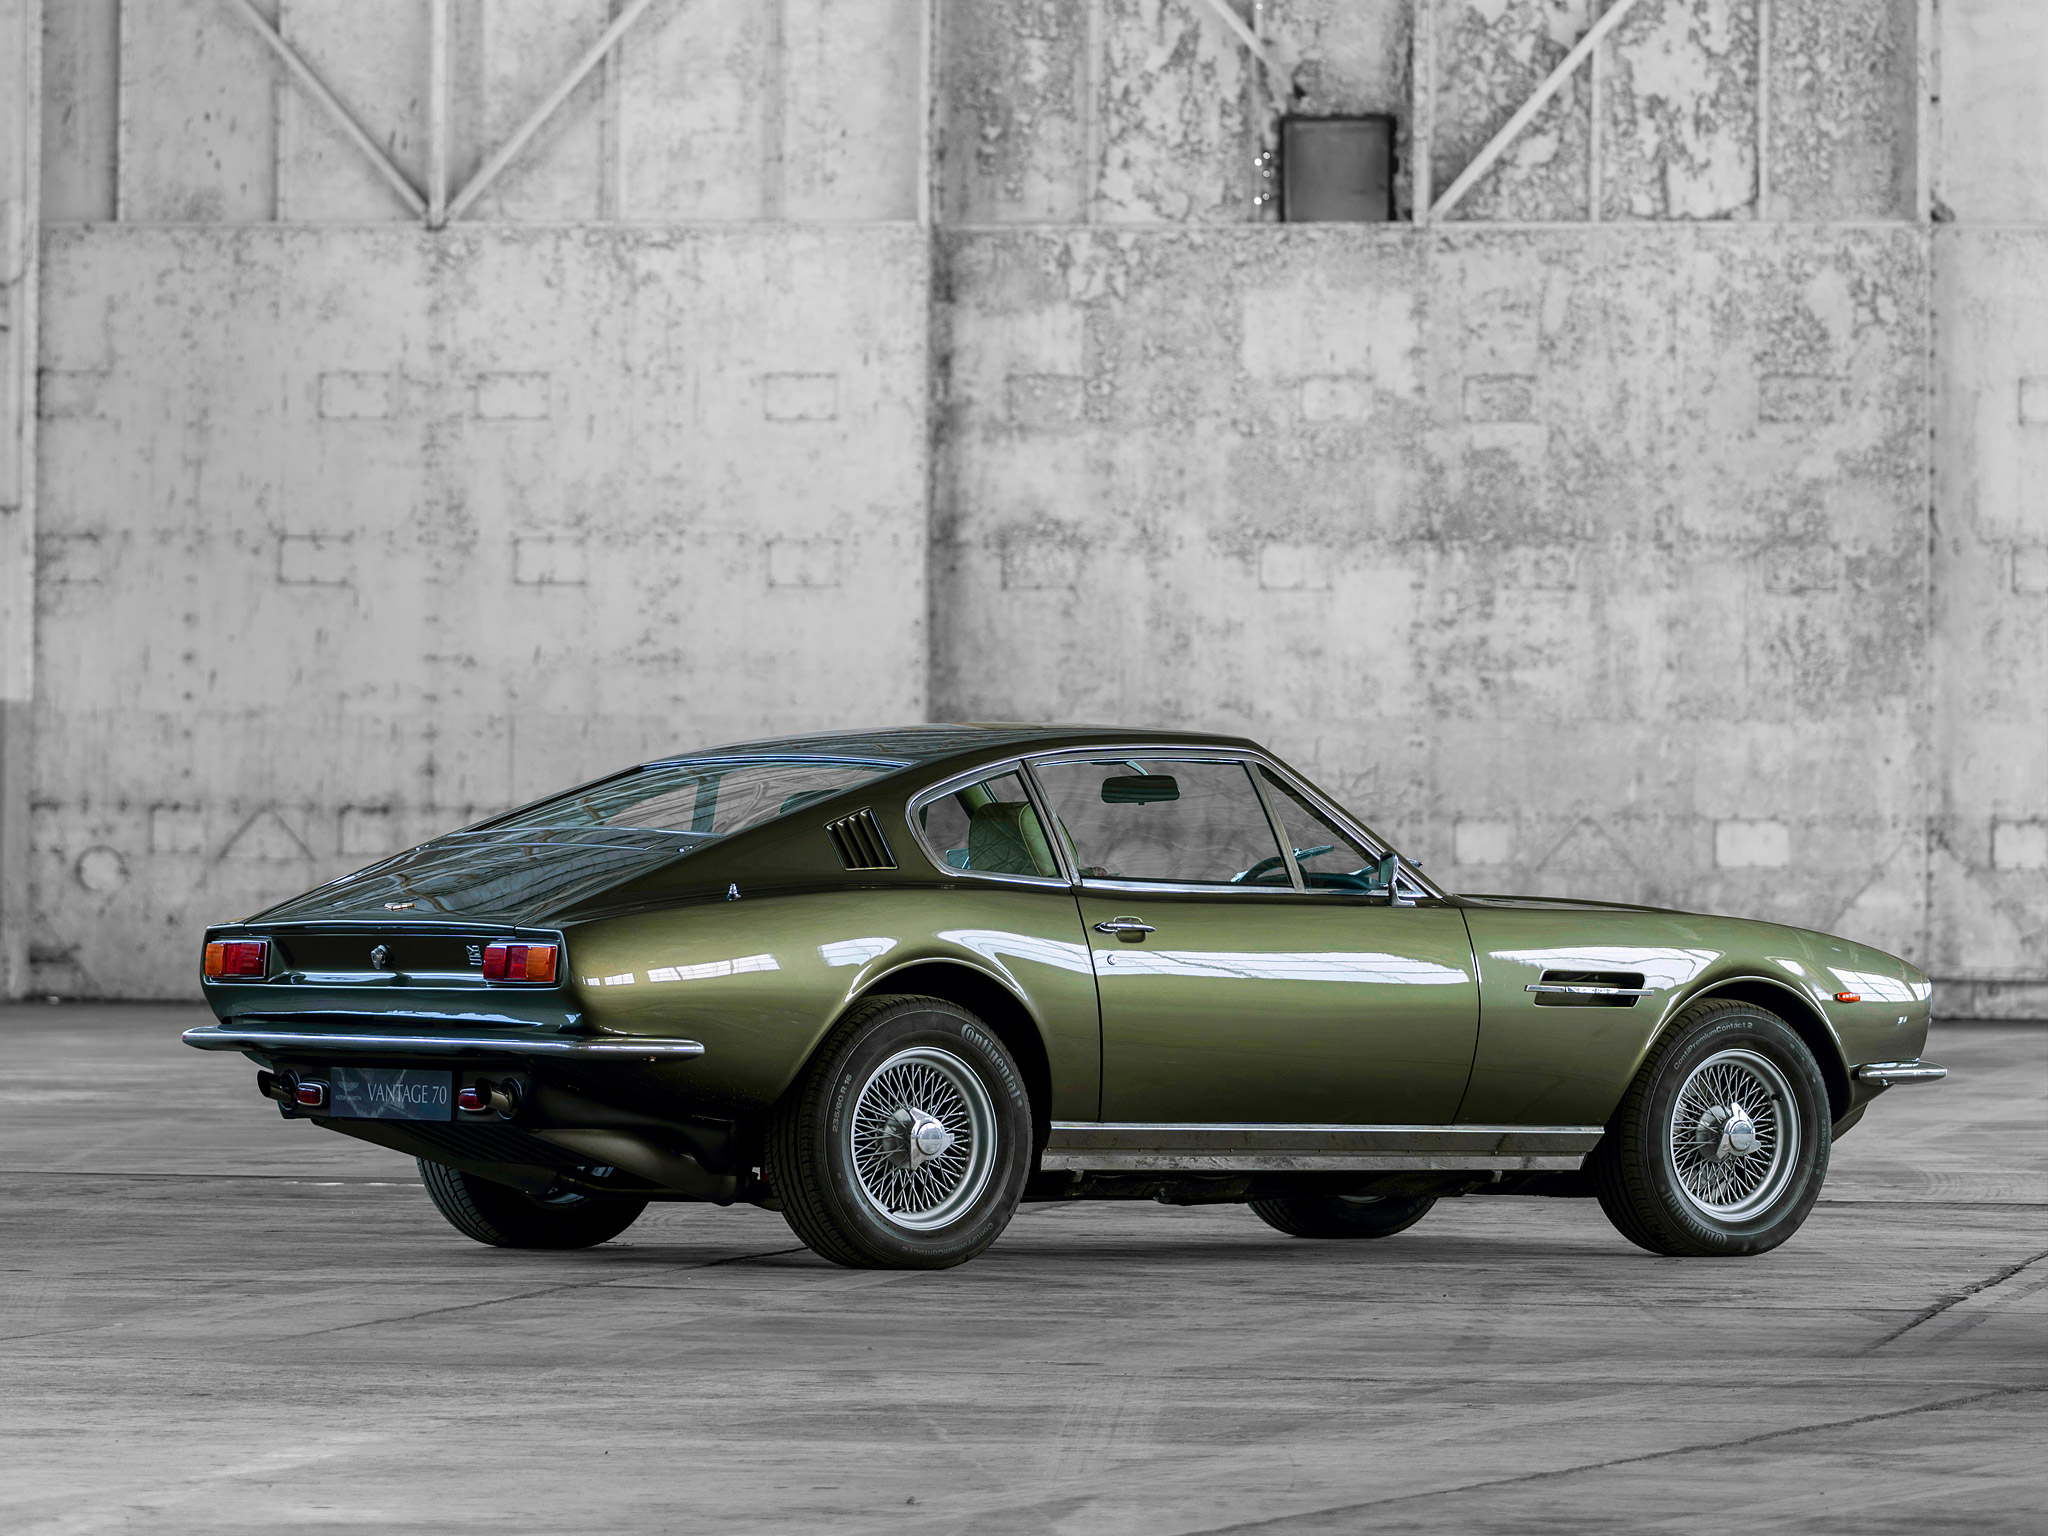  1970 Aston Martin DBS V8 Wallpaper.